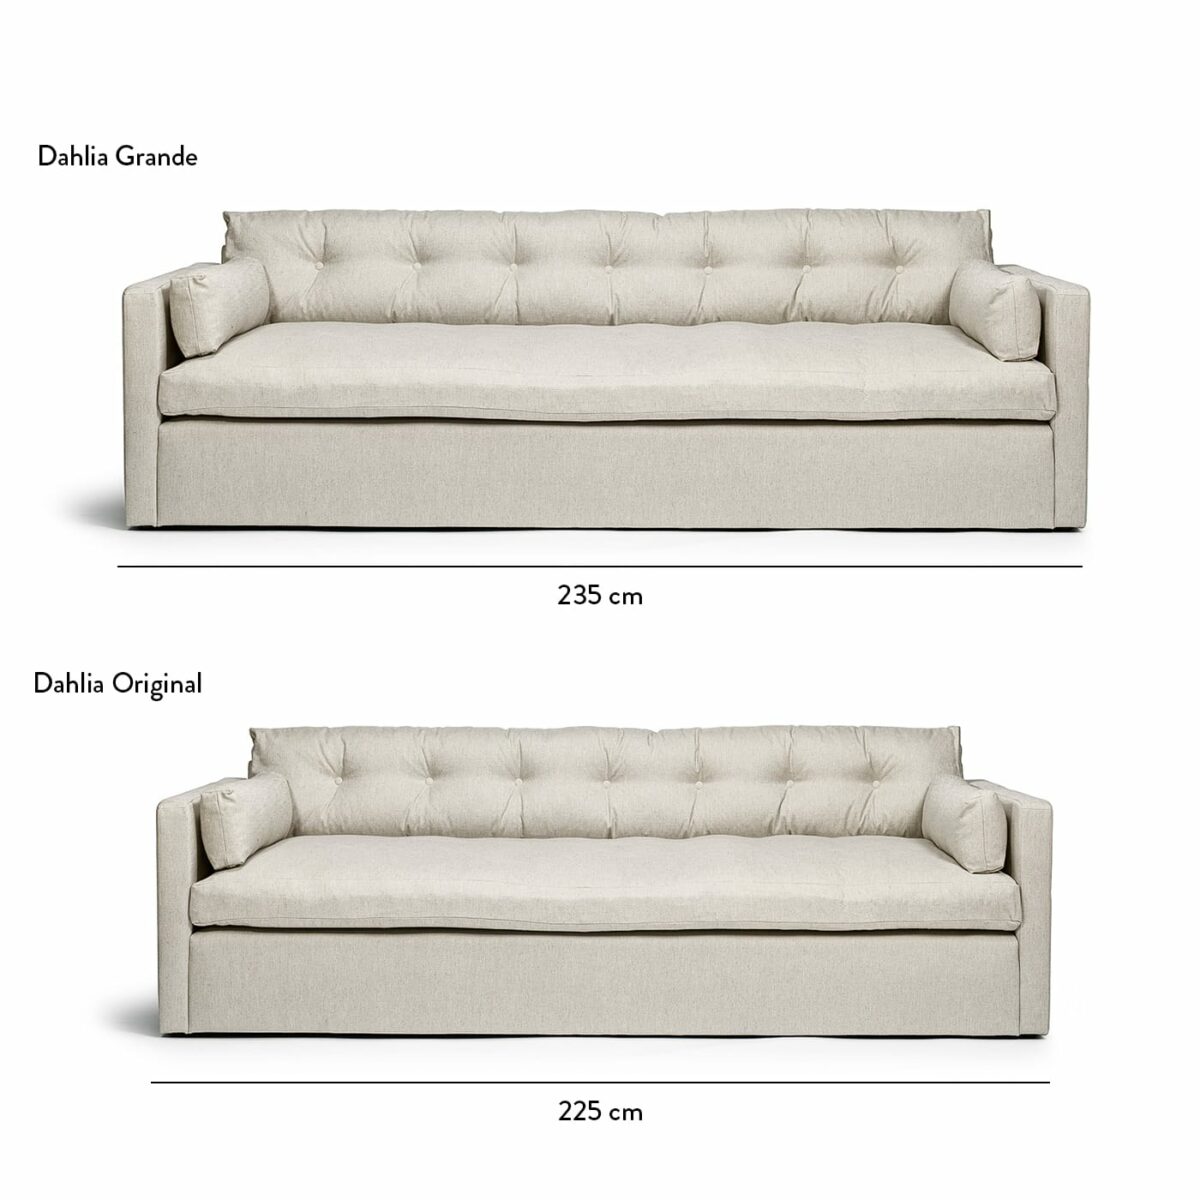 Dahlia Grande 3-Seat Sofa Dot